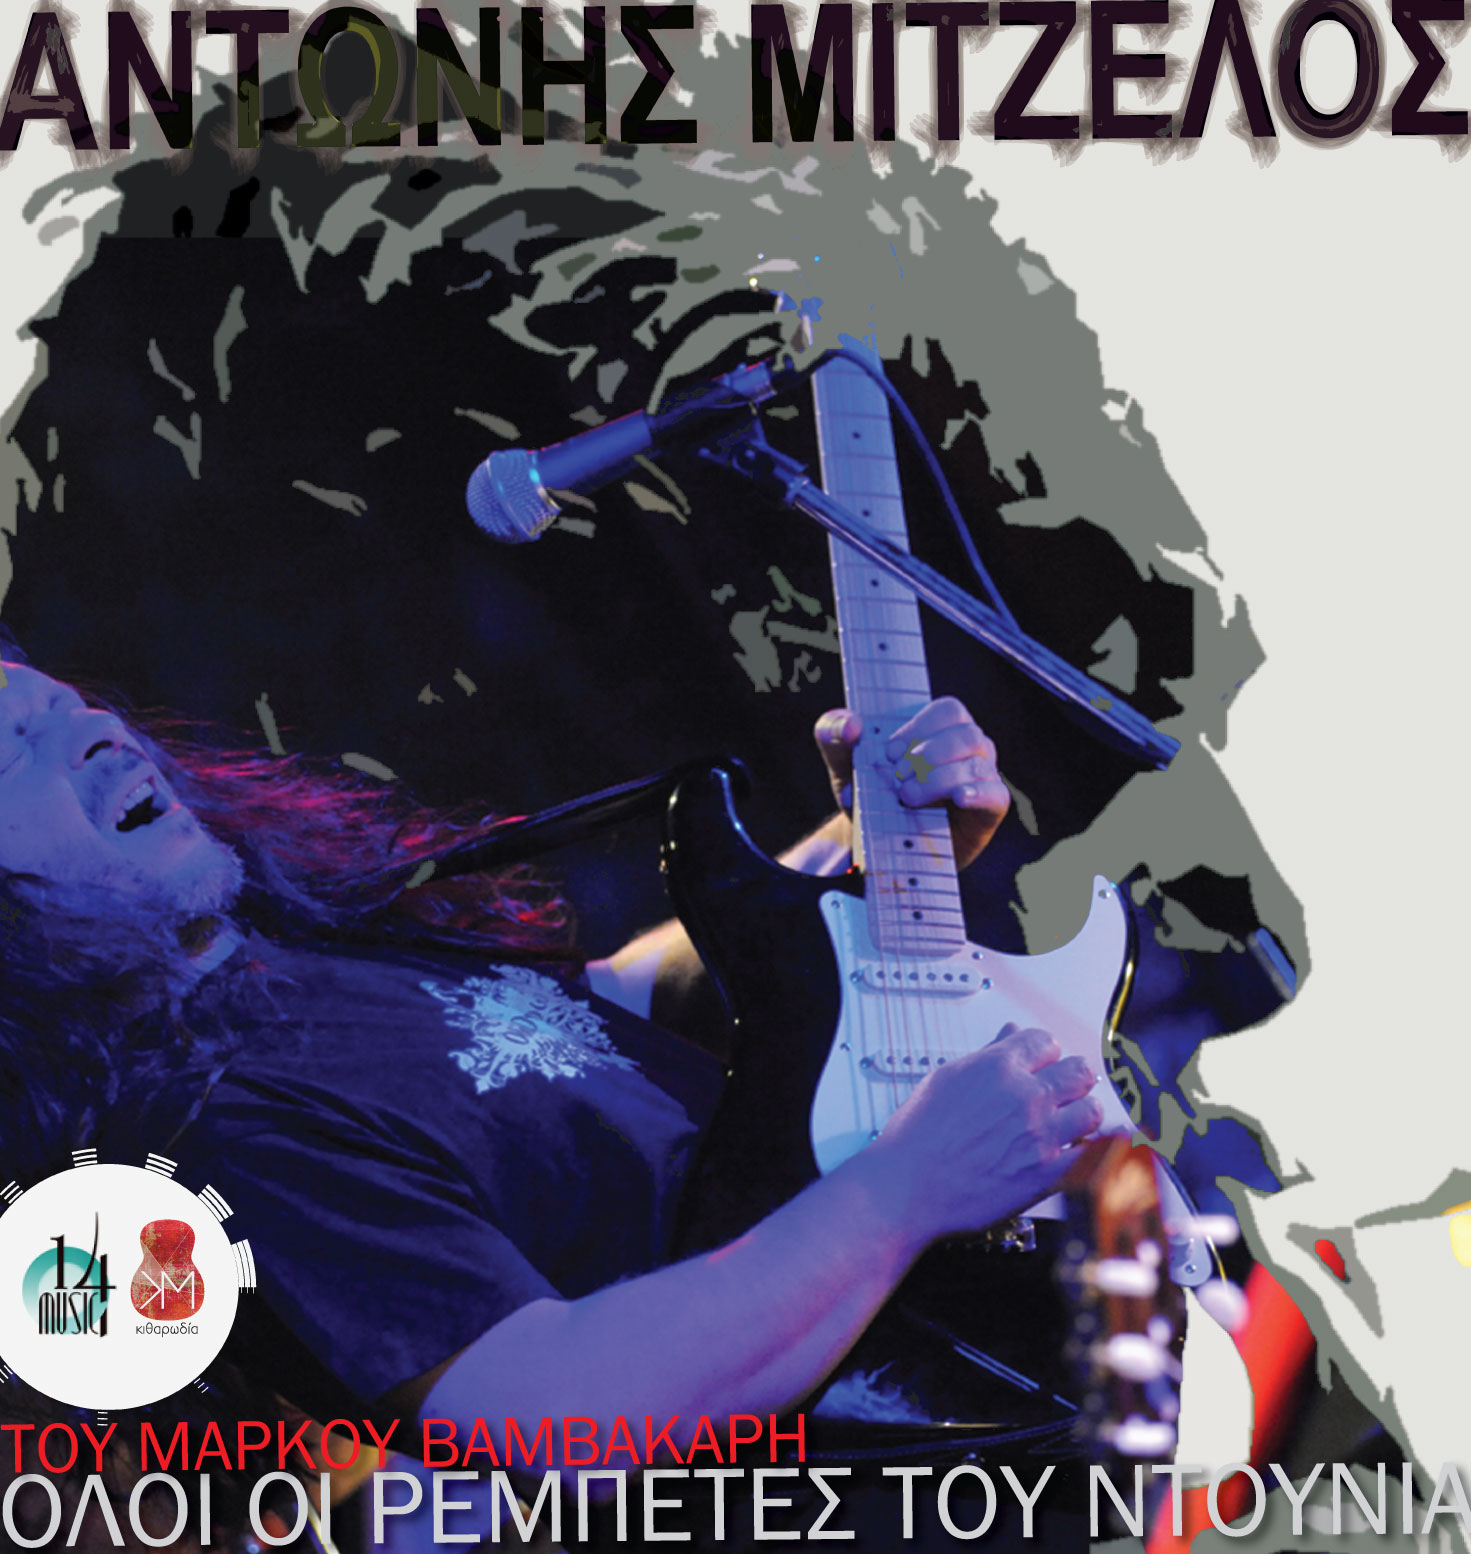 mitzelos rebetes new cover